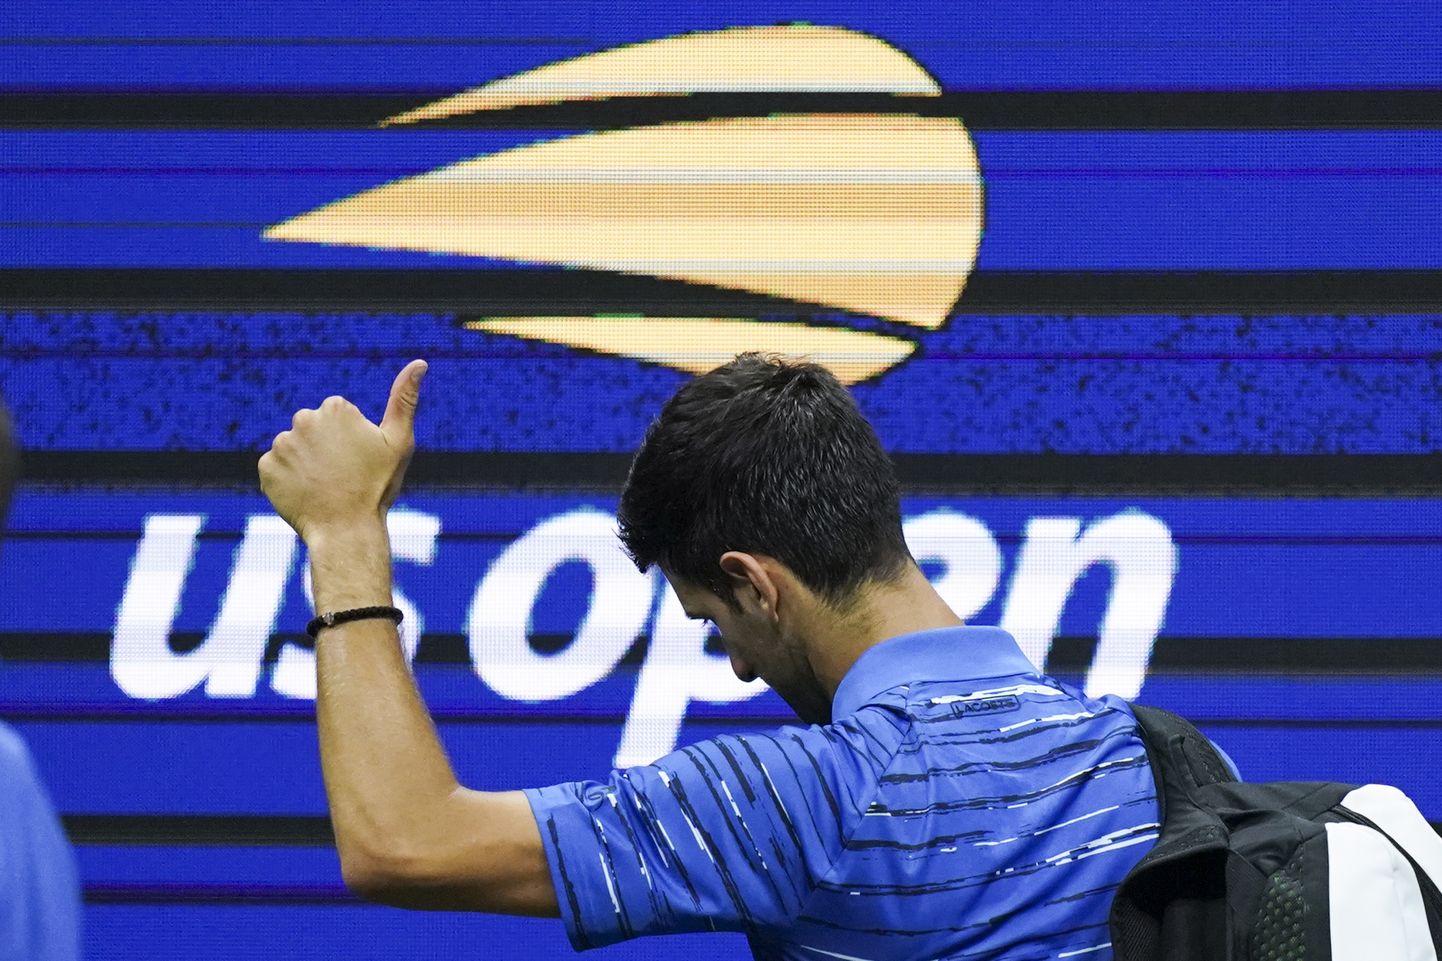 Maailma esireket ja US Openi tiitlikaitsja Novak Djokovic pidi vigastuse tõttu suurturniiri pooleli jätma